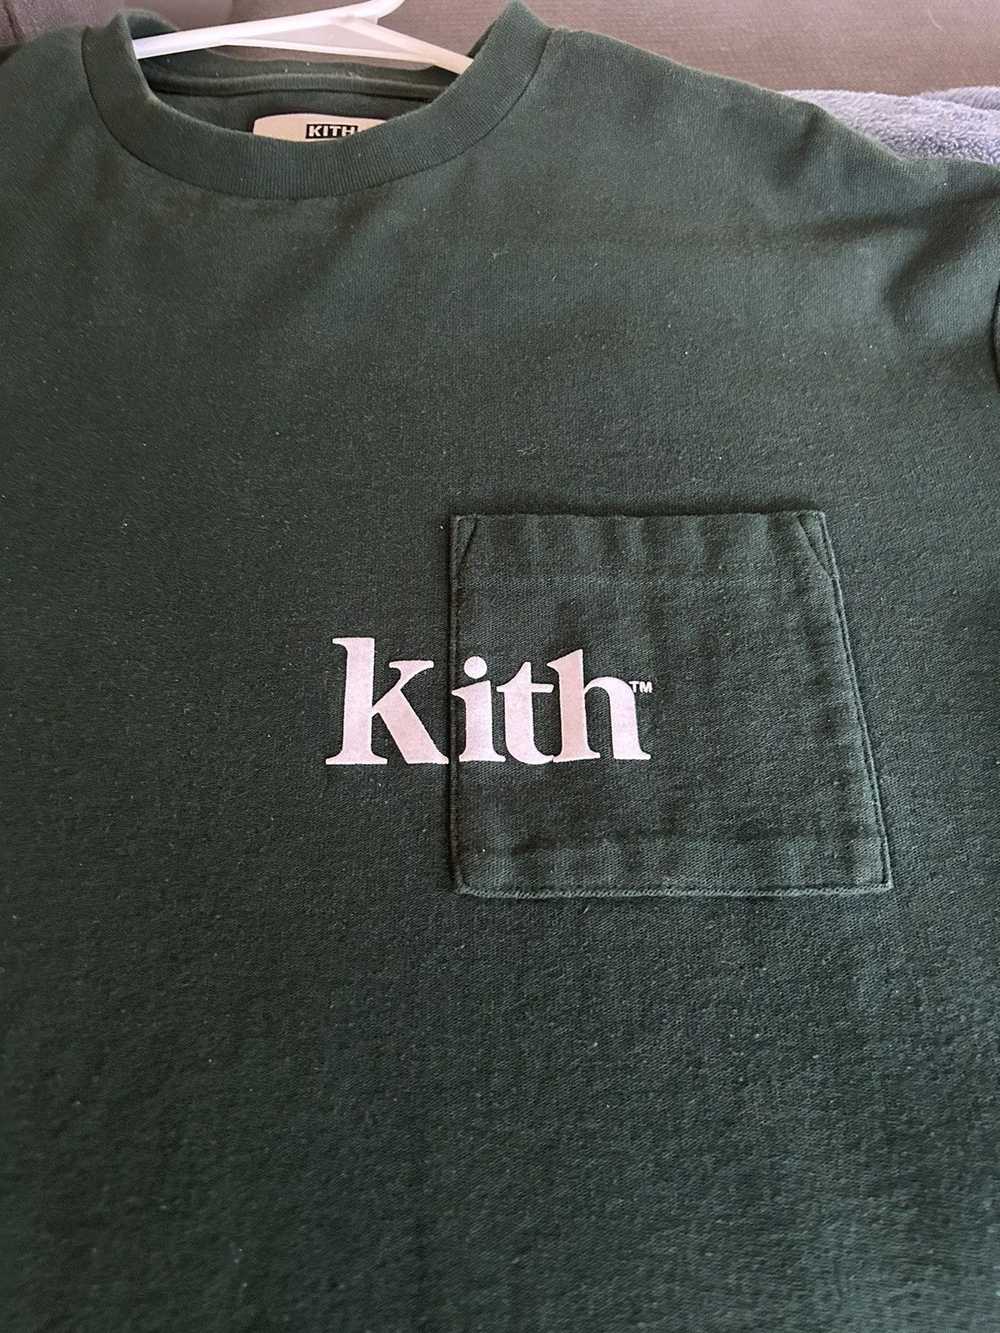 Kith Kith pocket tee - image 4